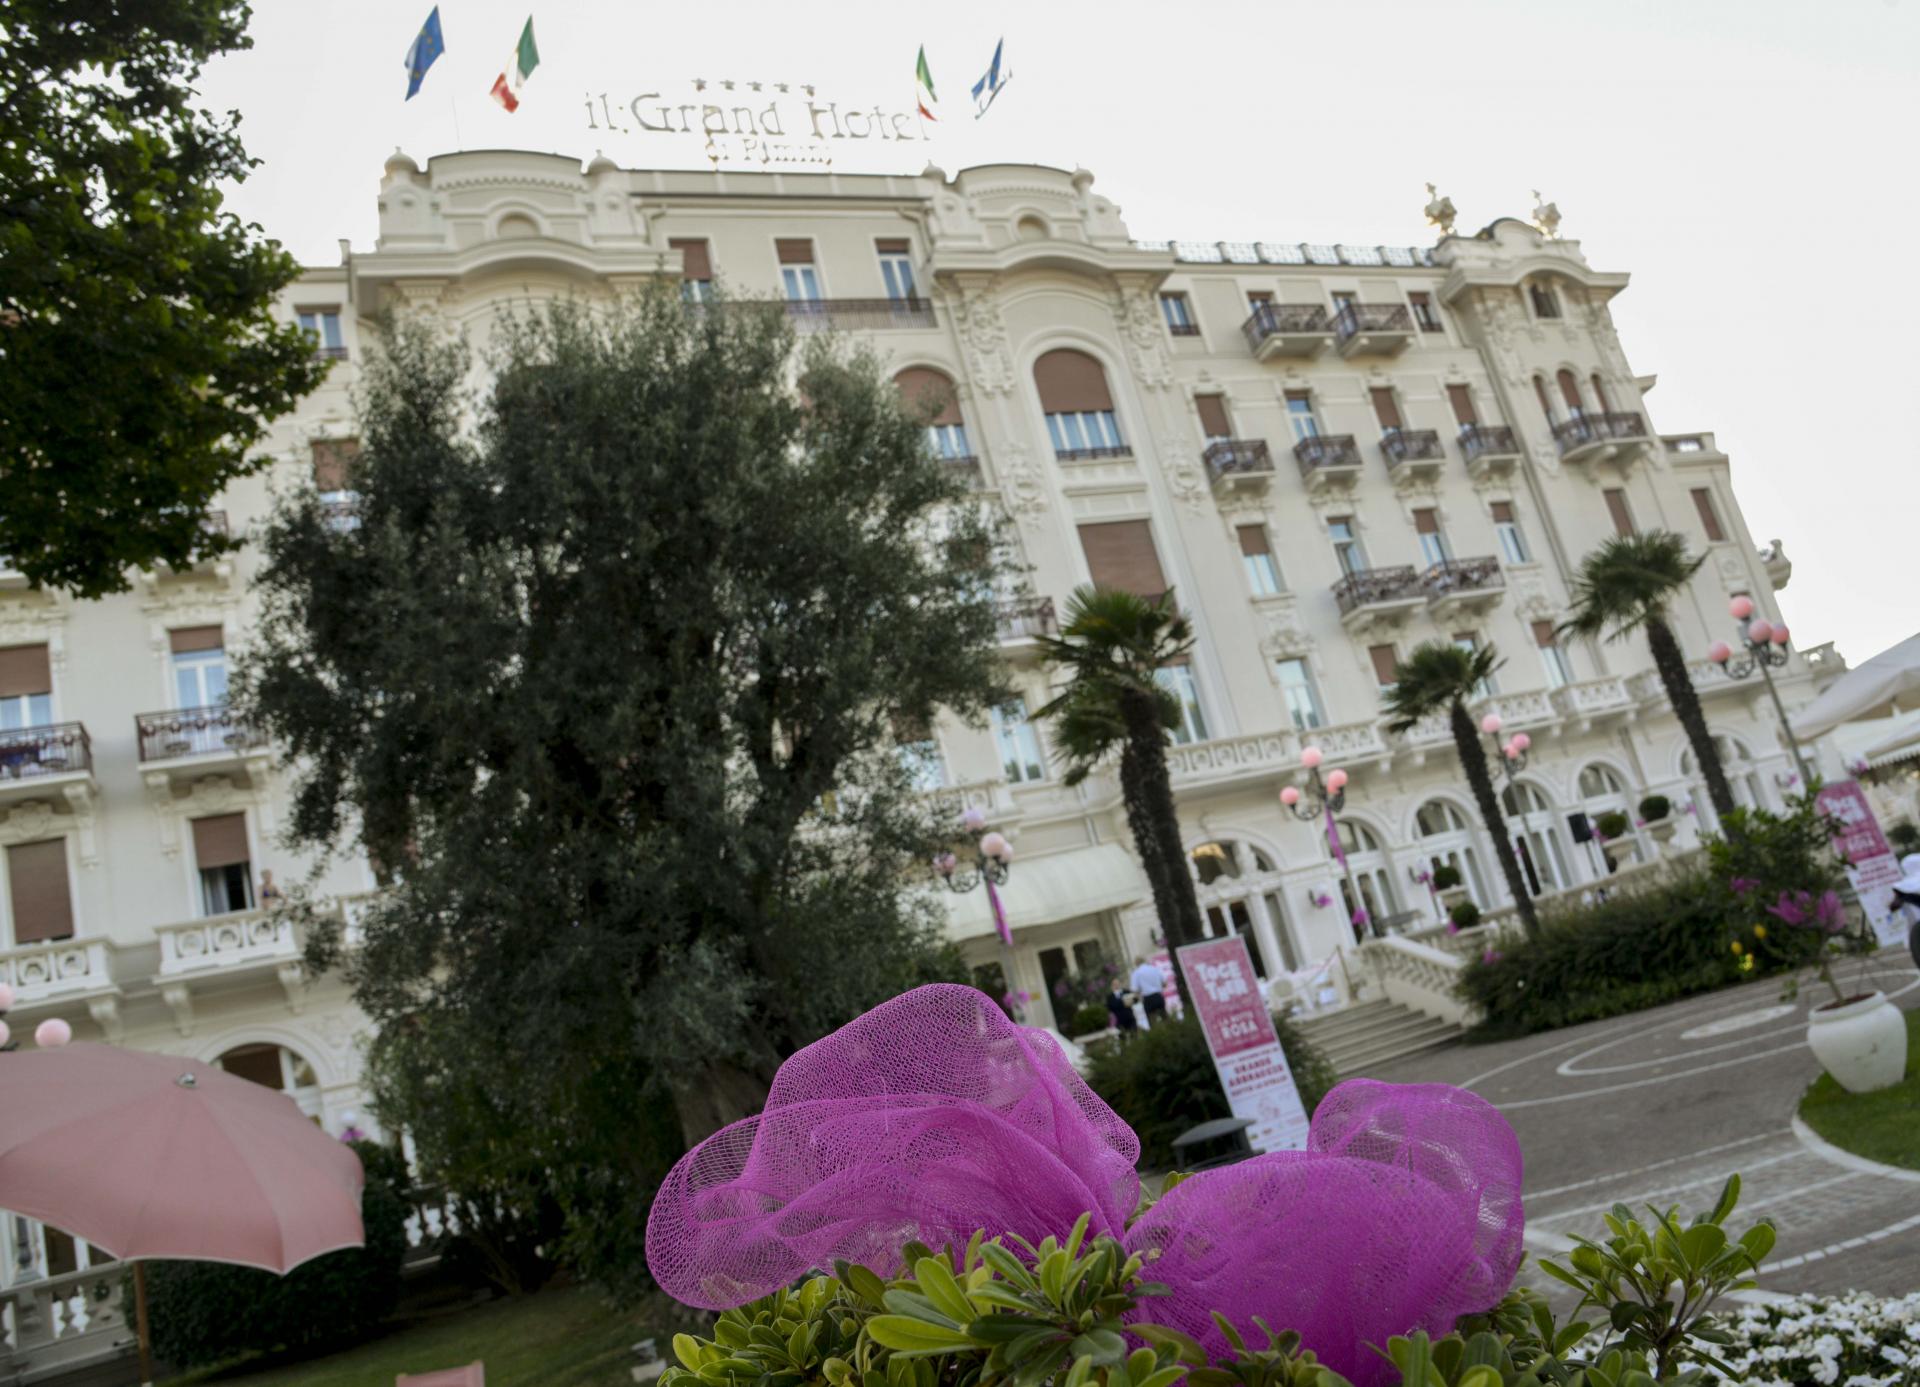 Rimini, Grand hotel